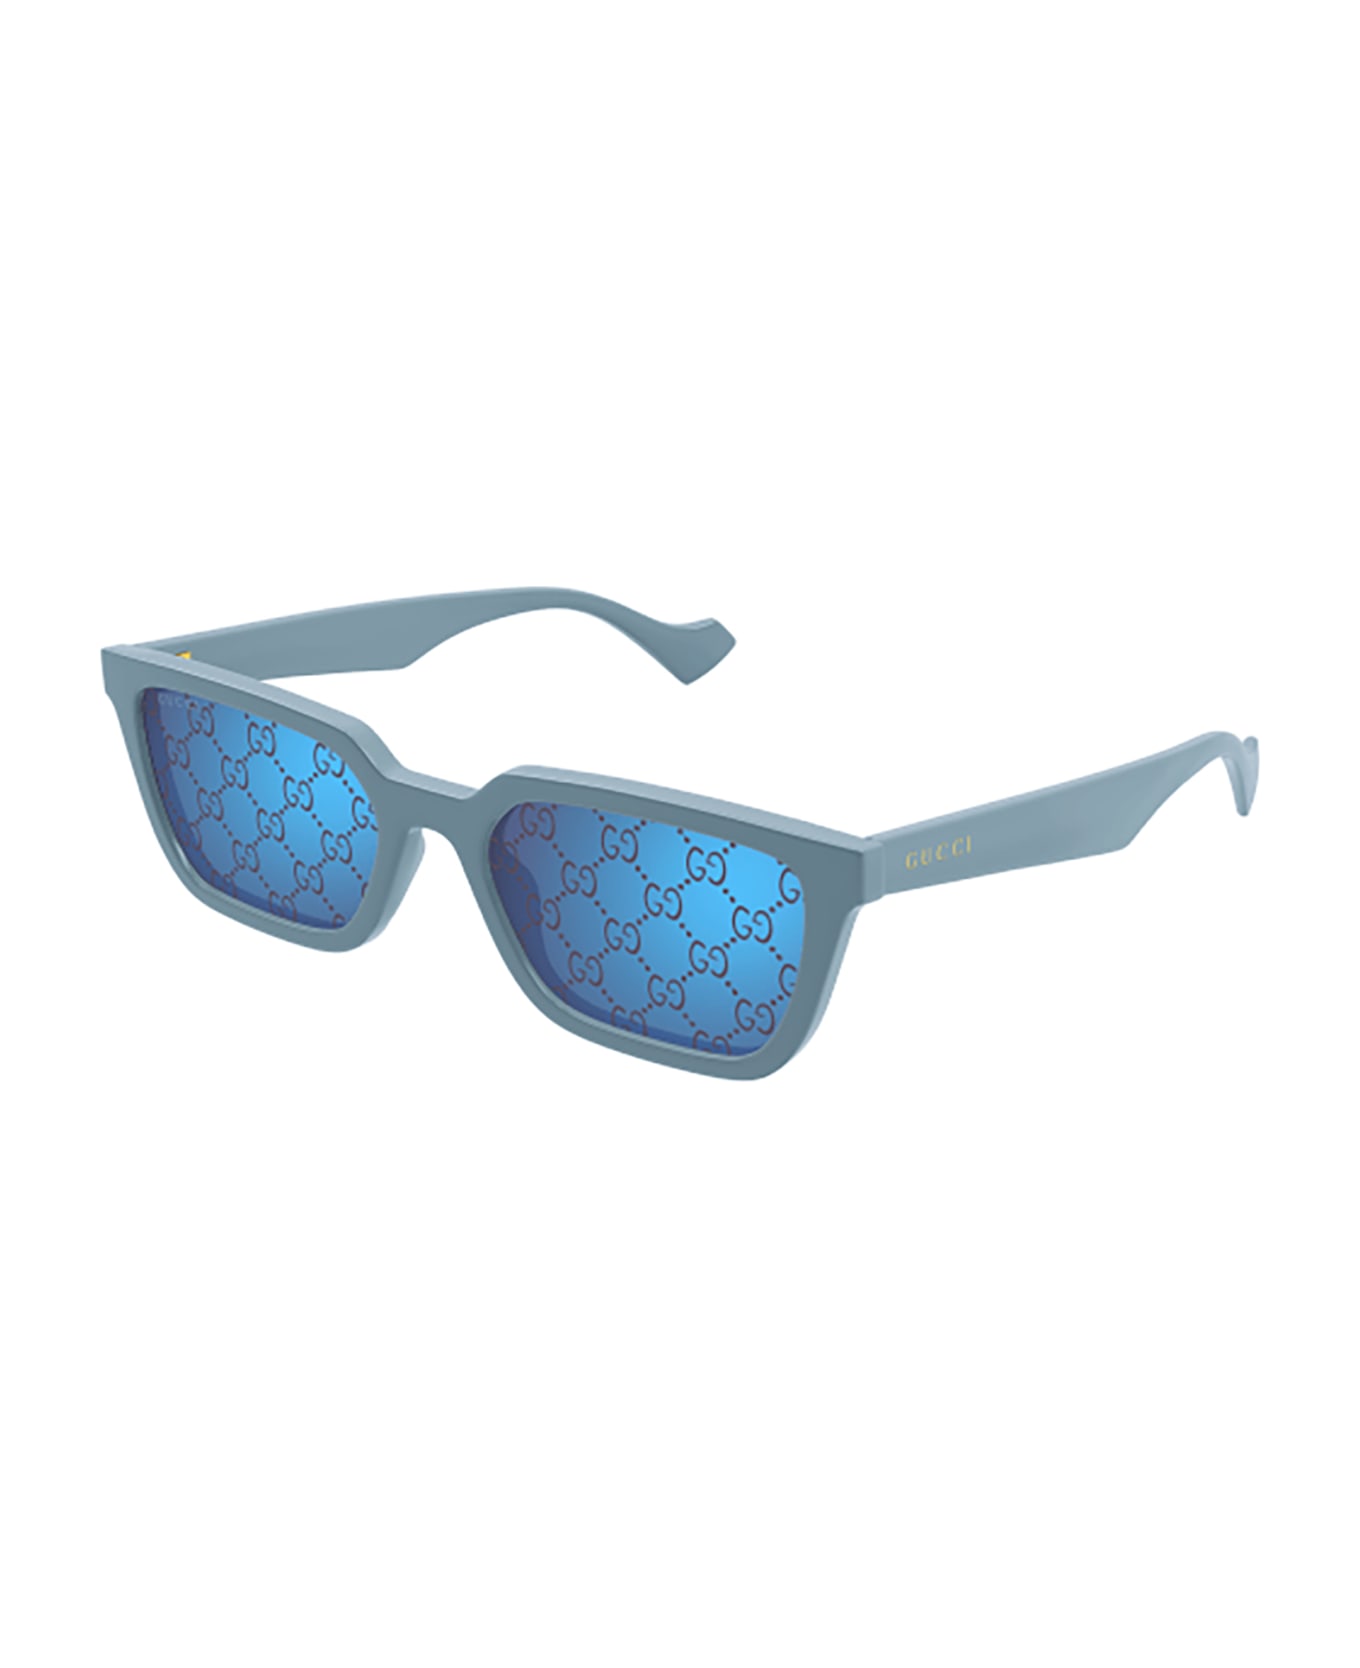 Gucci Eyewear GG1539S Sunglasses - Light Blue Light Blue